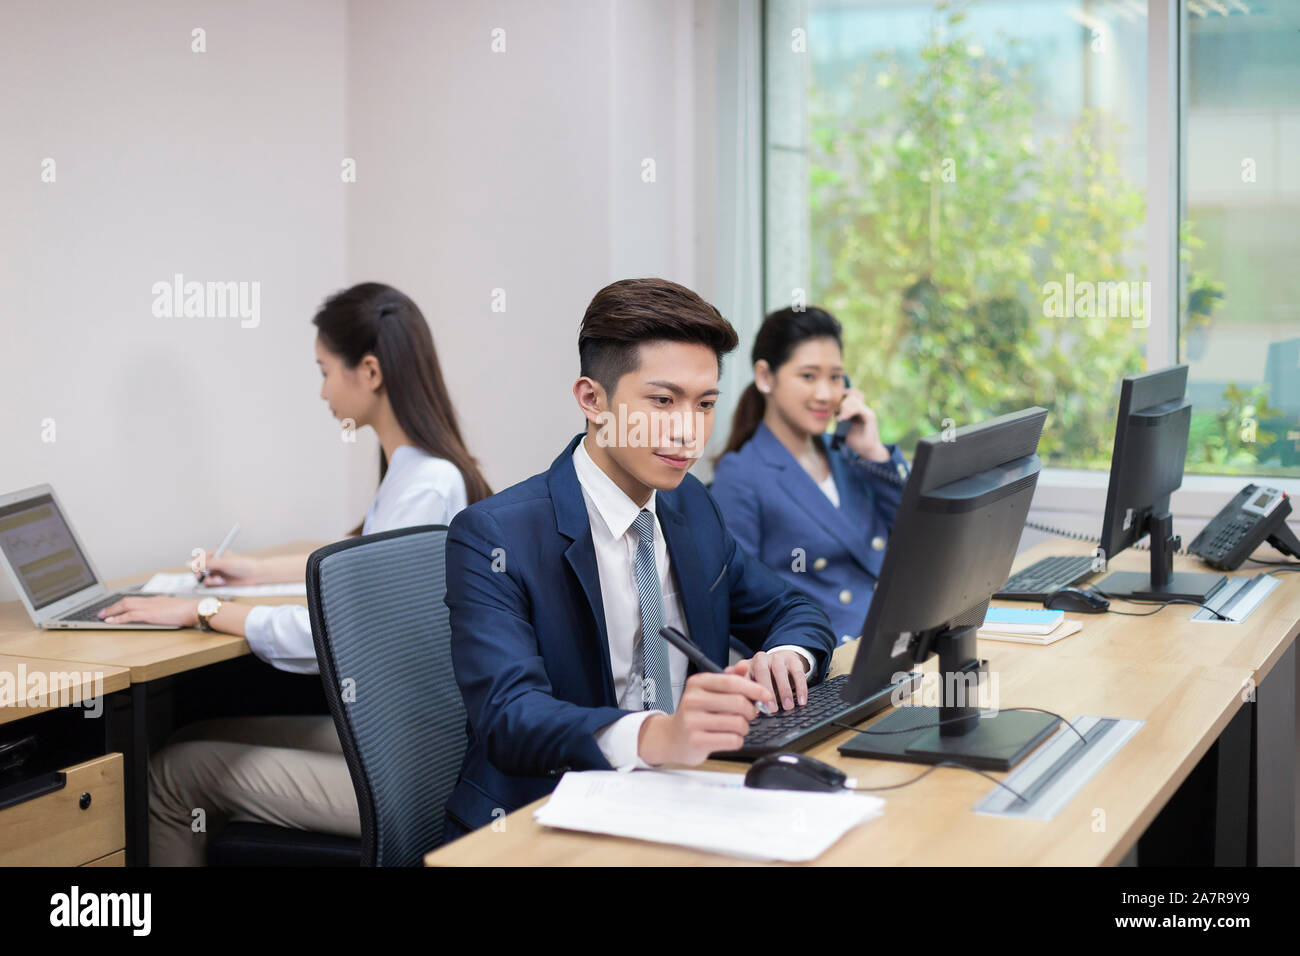 Drei junge Geschäftsleute und Geschäftsleute, die in einem Büro mit einem Computer arbeiten, ein anderer mit einem Telefon und ein anderer mit einem Laptop Stockfoto